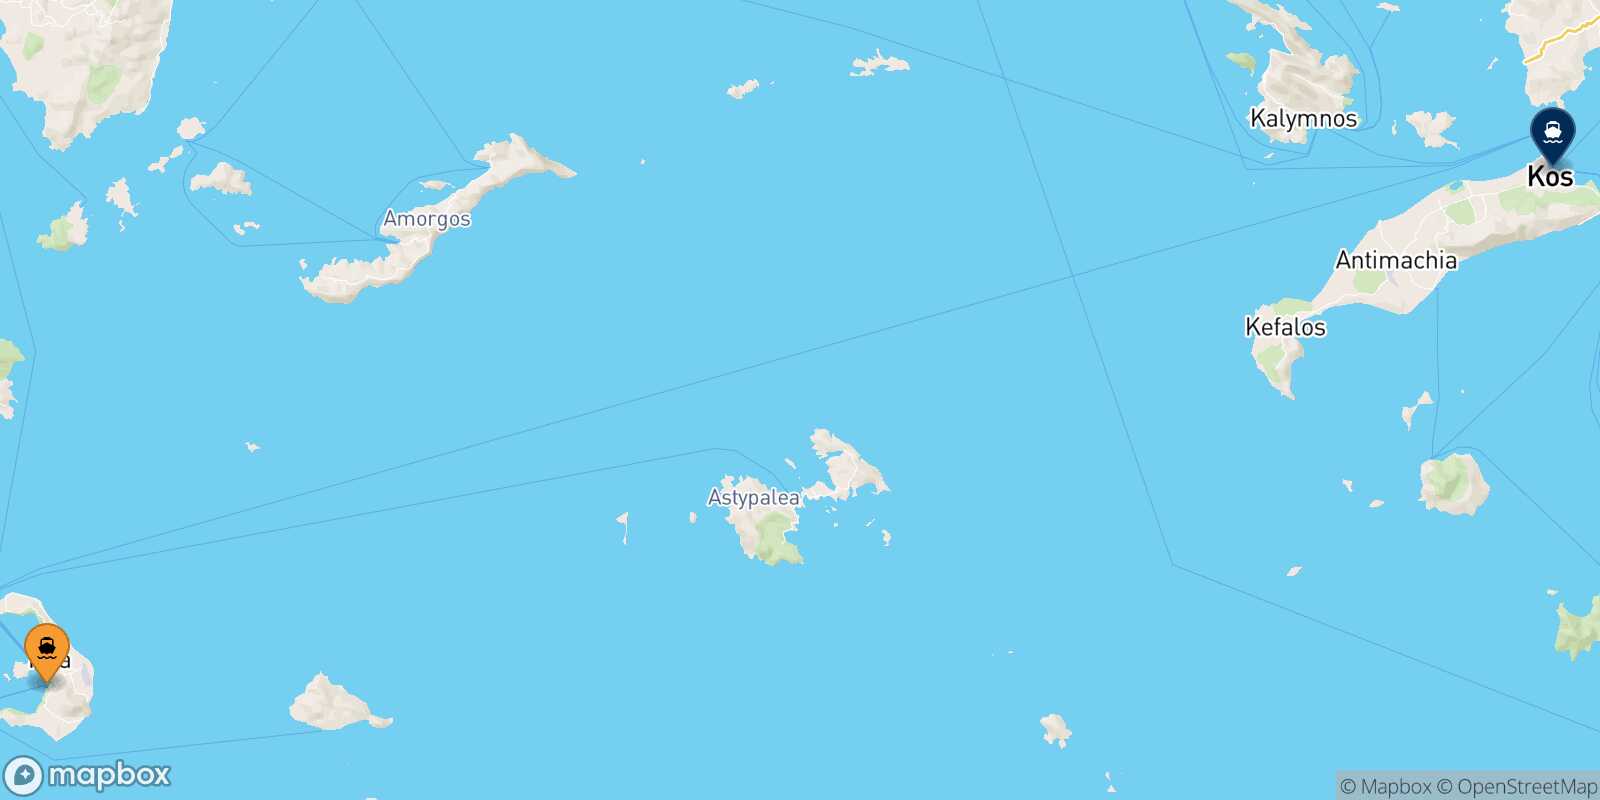 Thira (Santorini) Kos route map